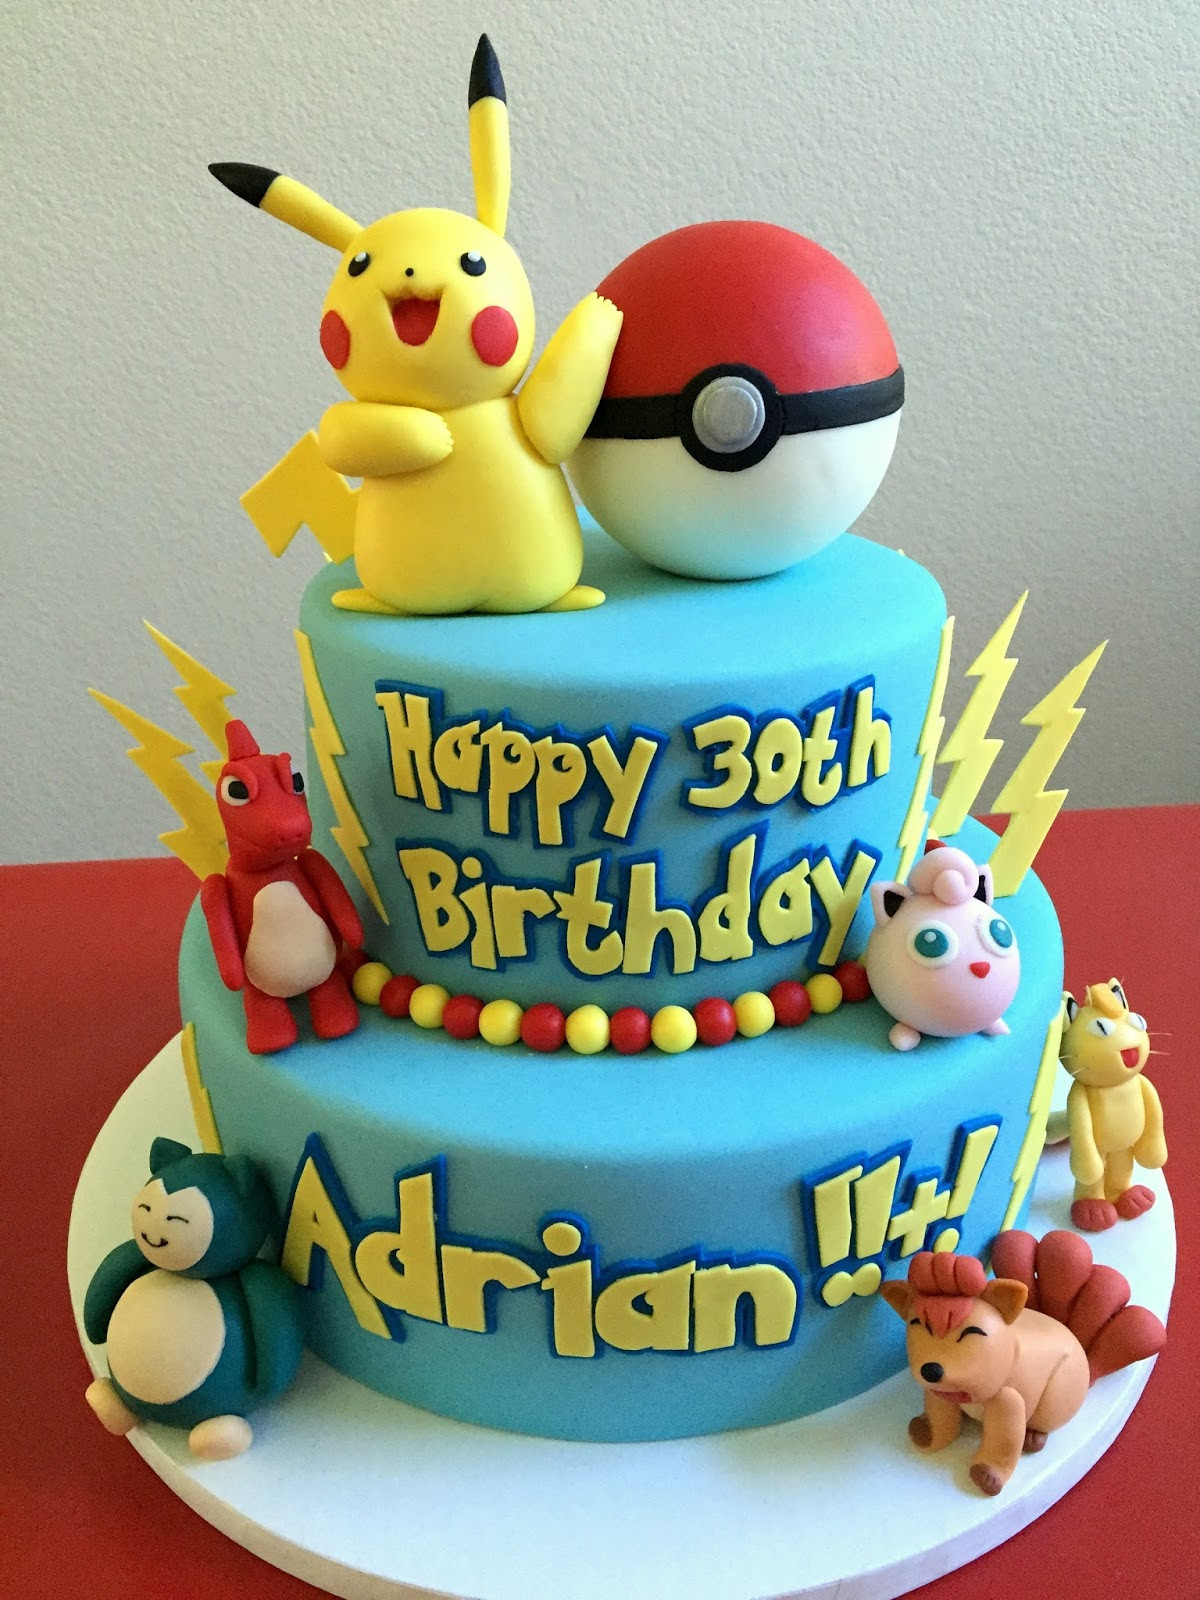 Pikachu Birthday Cake
 The Pokemon Pikachu Cake